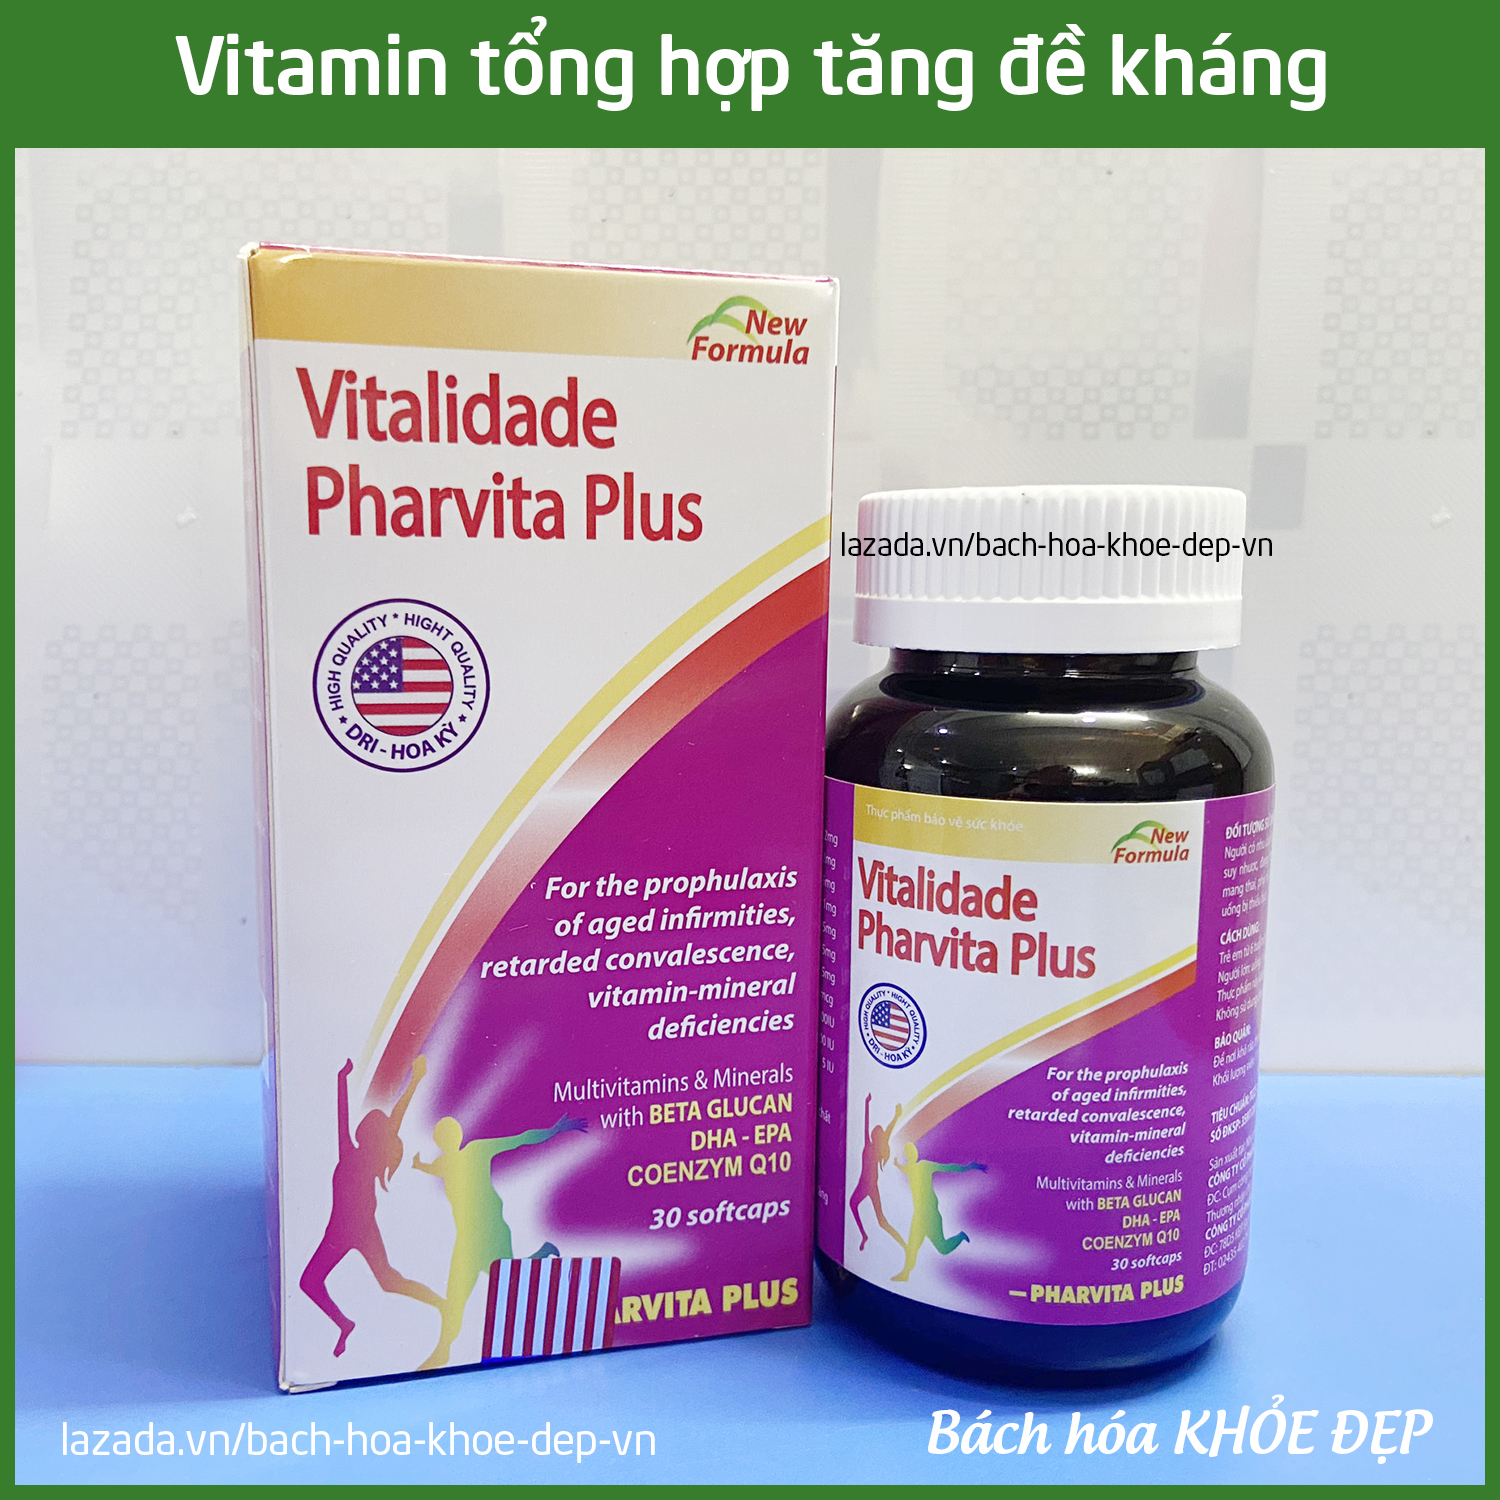 Viên uống vitamin tổng hợp Vitalidade Pharvita Plus bồi bổ cơ thể, tăng cường sức đề kháng, giảm mệt mỏi...